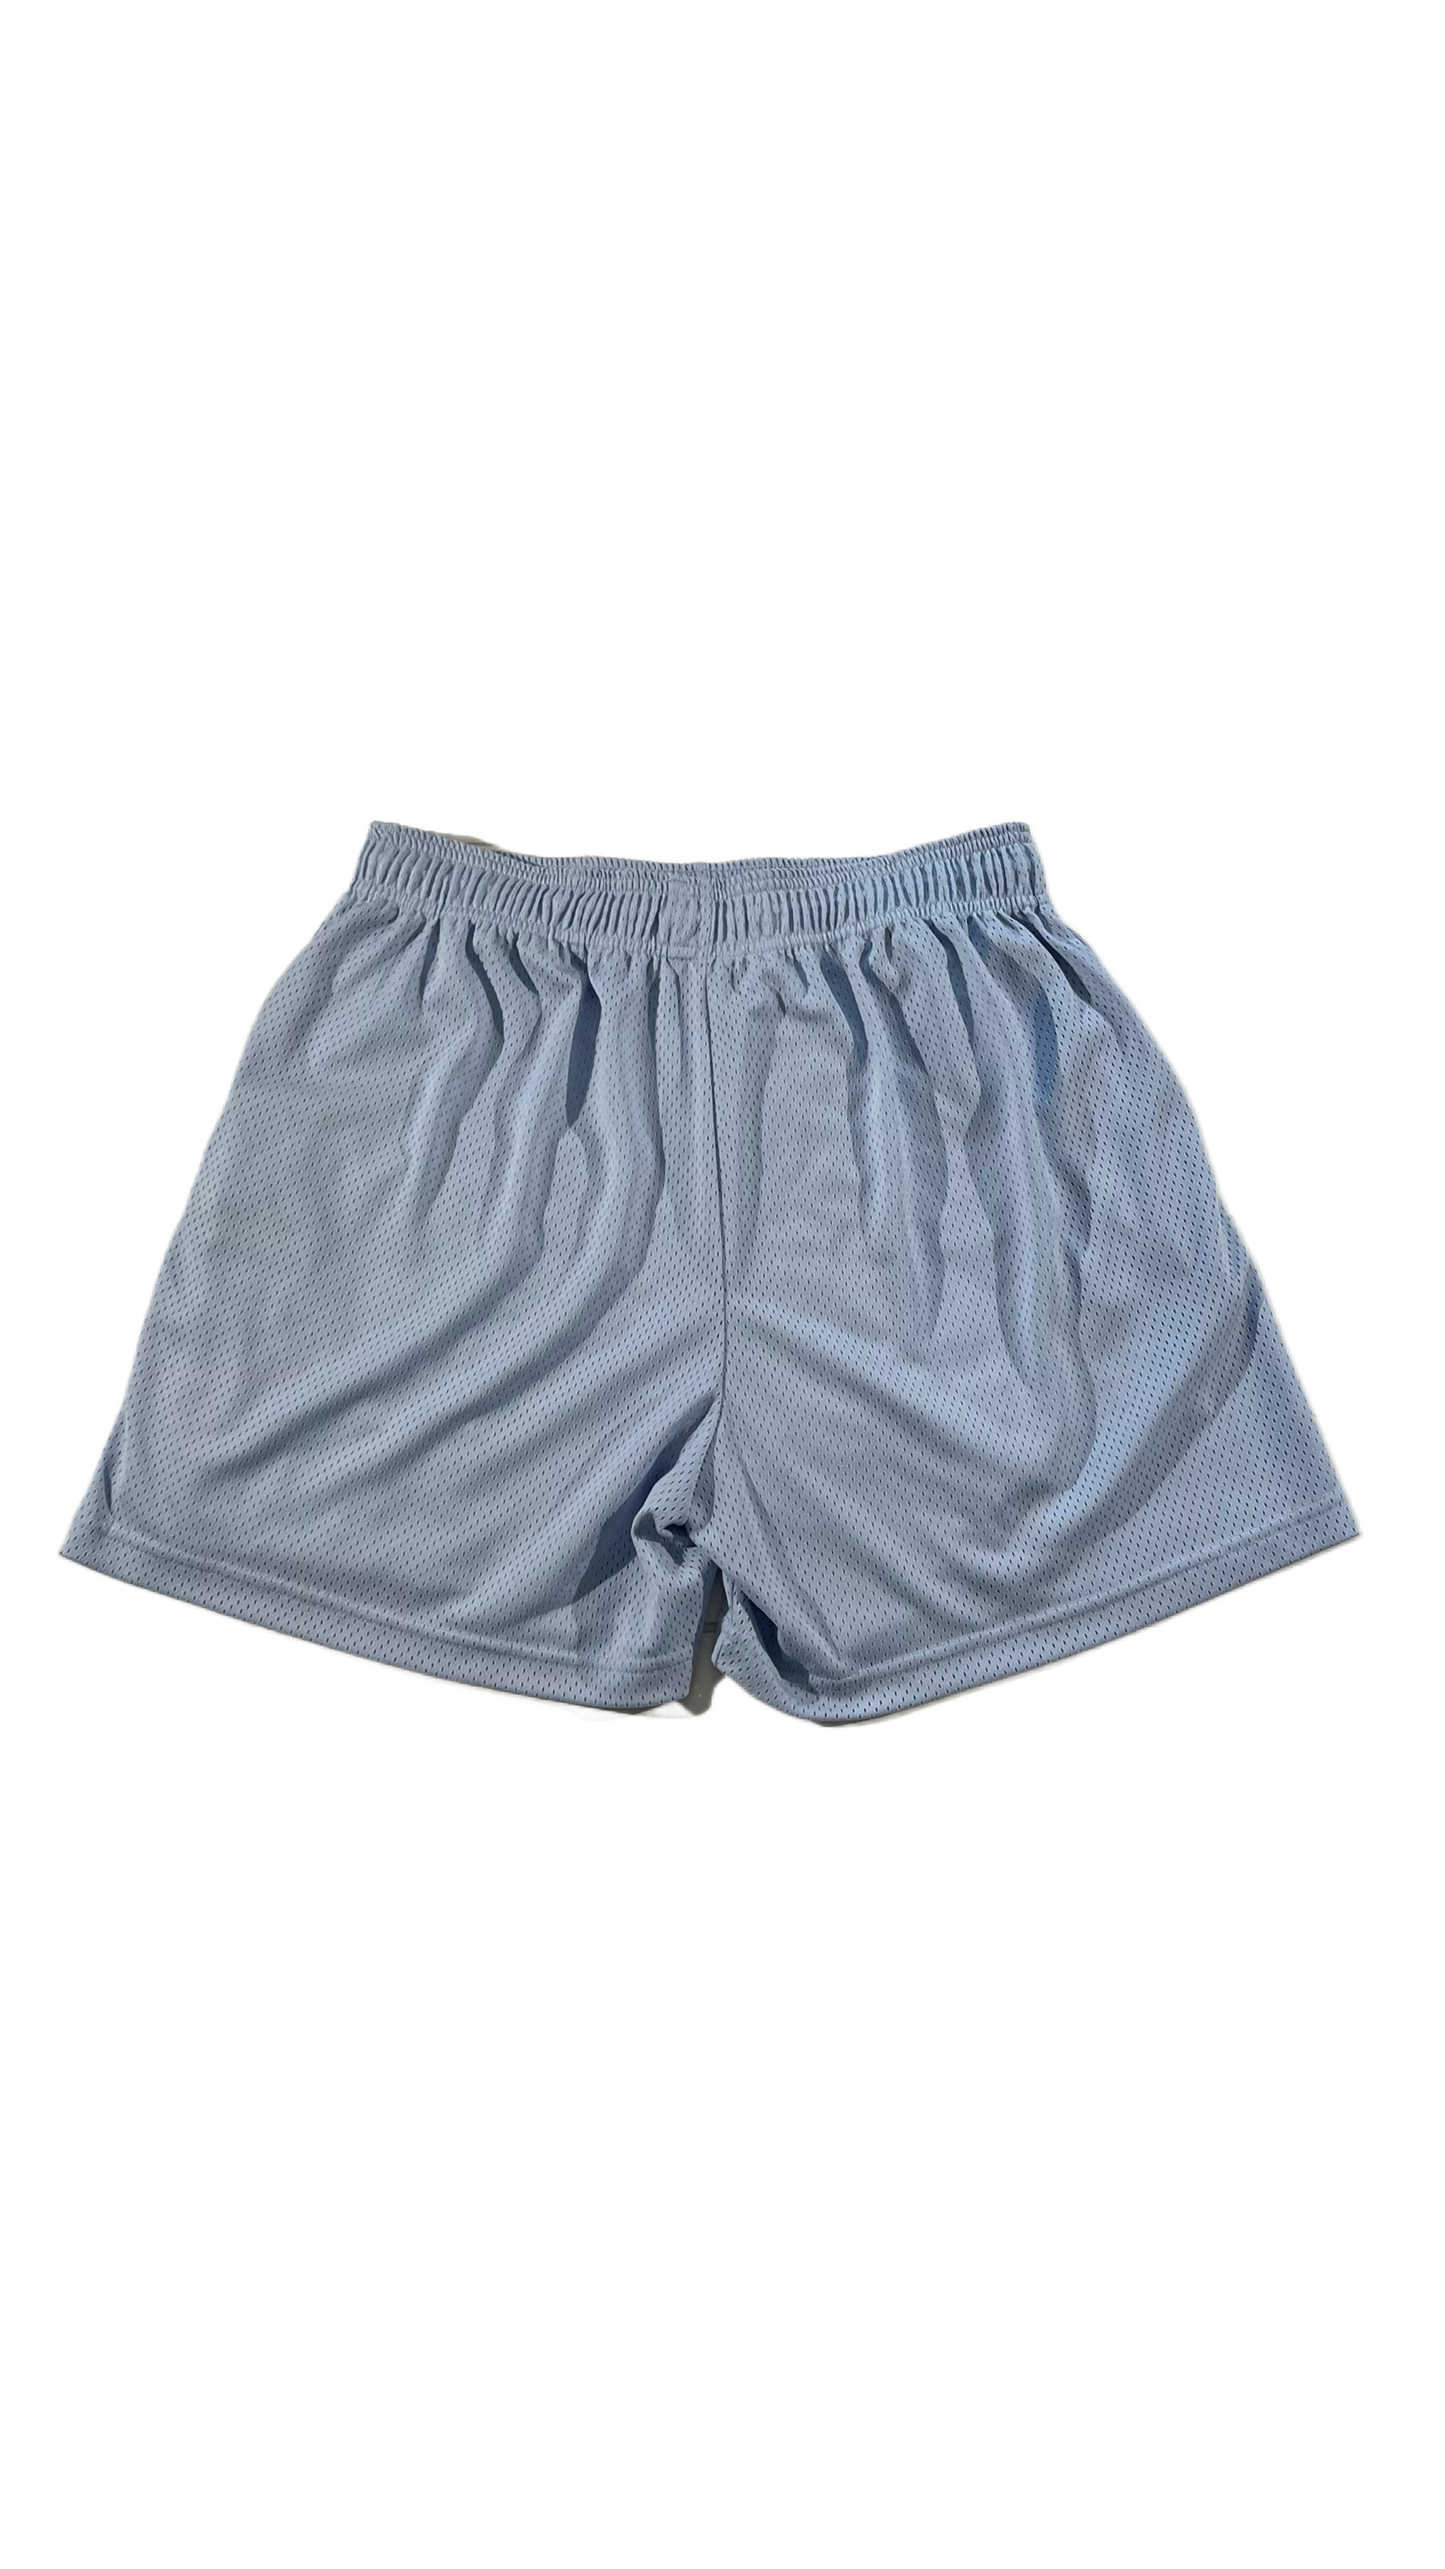 Eric Emanuel Basic Shorts